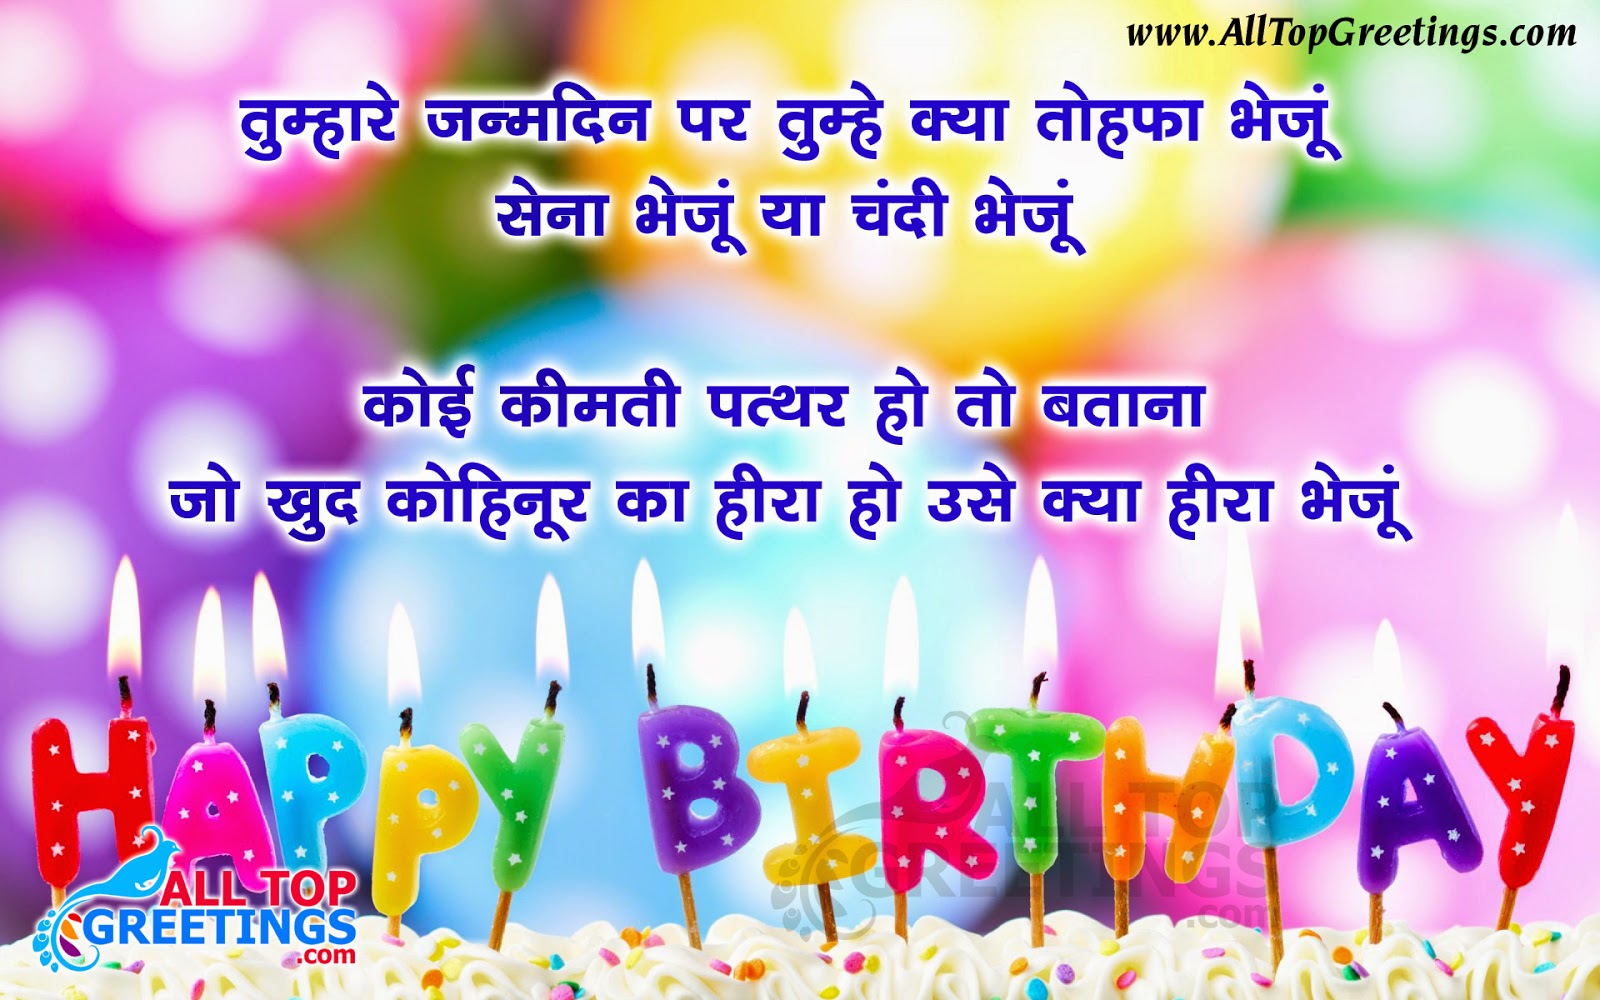 Hindi Happy Birthday Greetings in Hindi Font Free 9 All